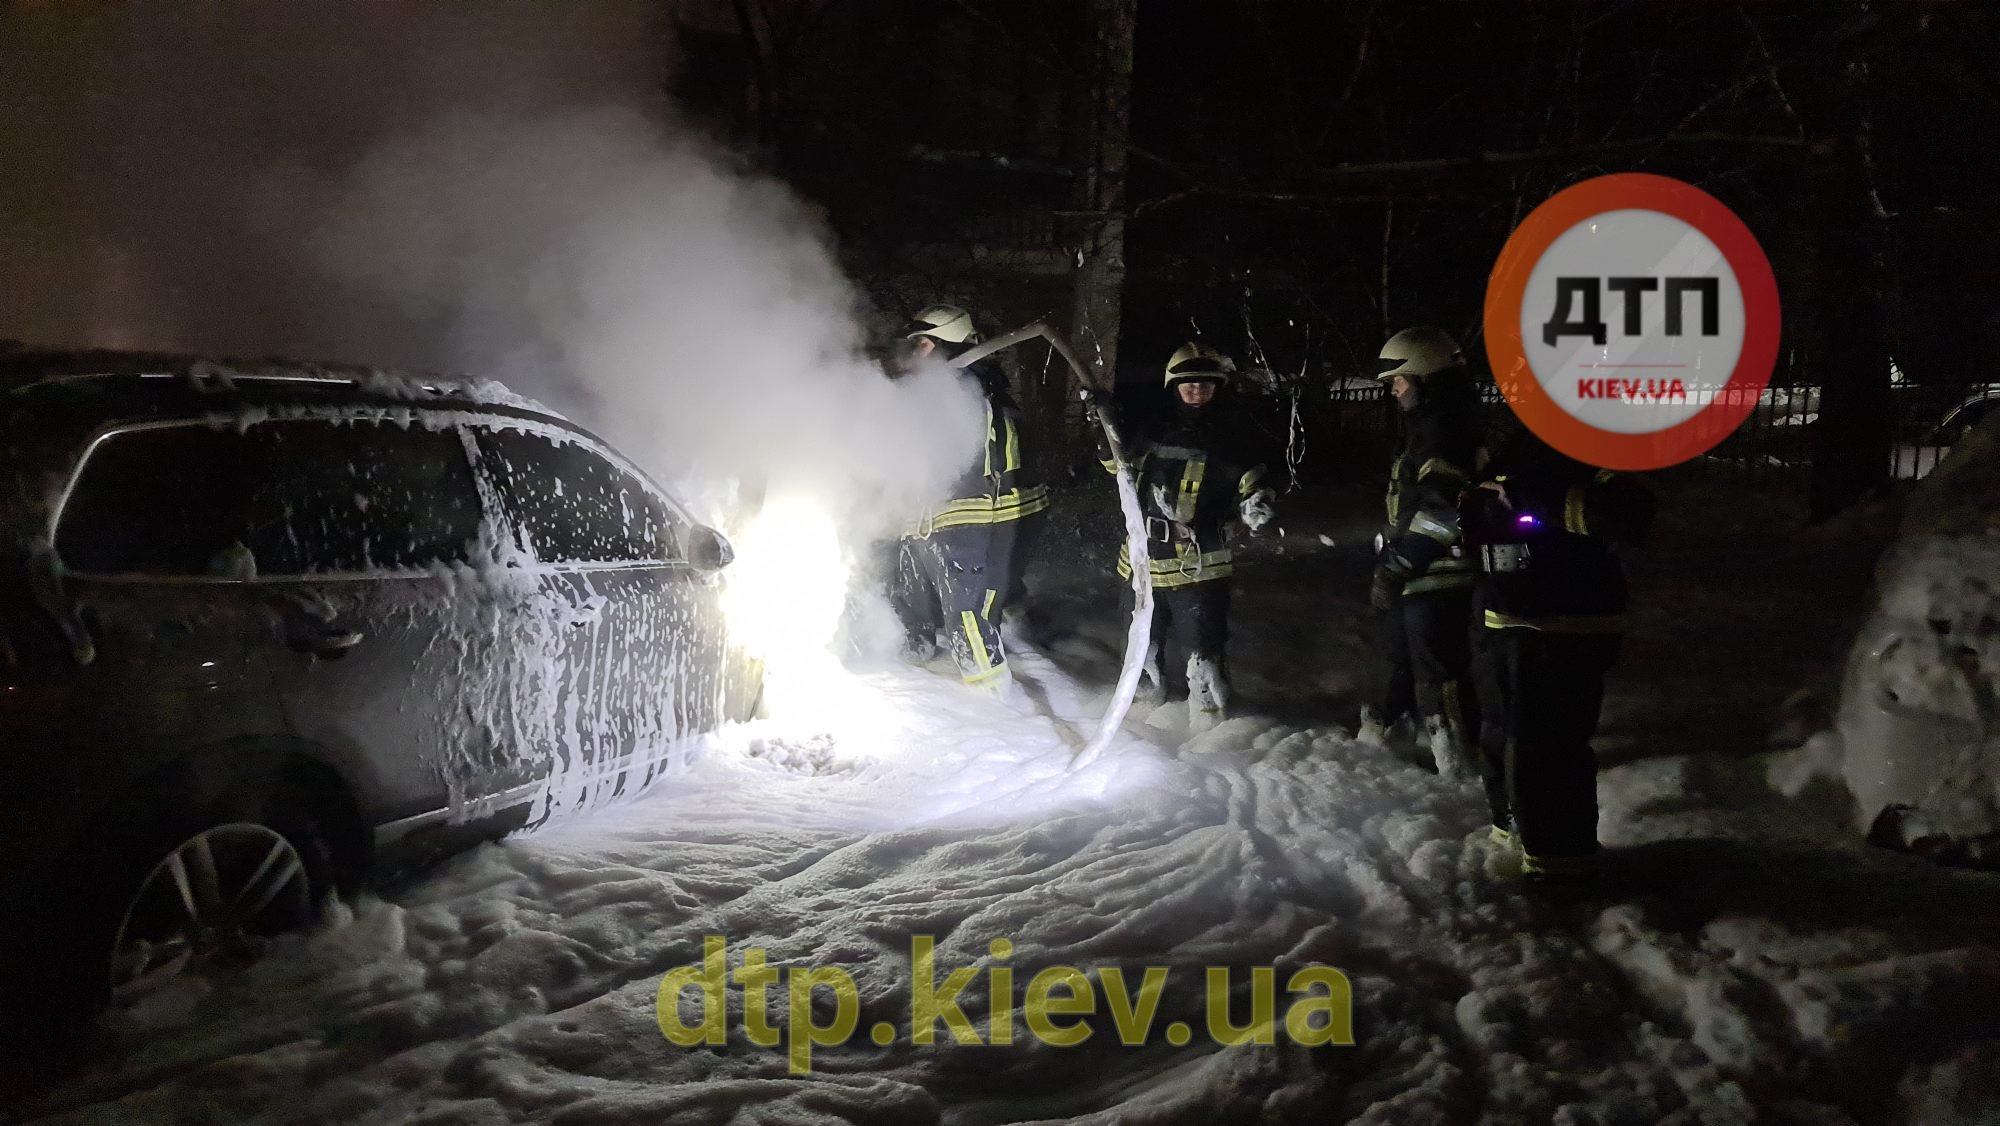 В Киеве подожгли машину основателя сообщества dtp.kiev.ua. Фото: .facebook.com/dtp.kiev.ua